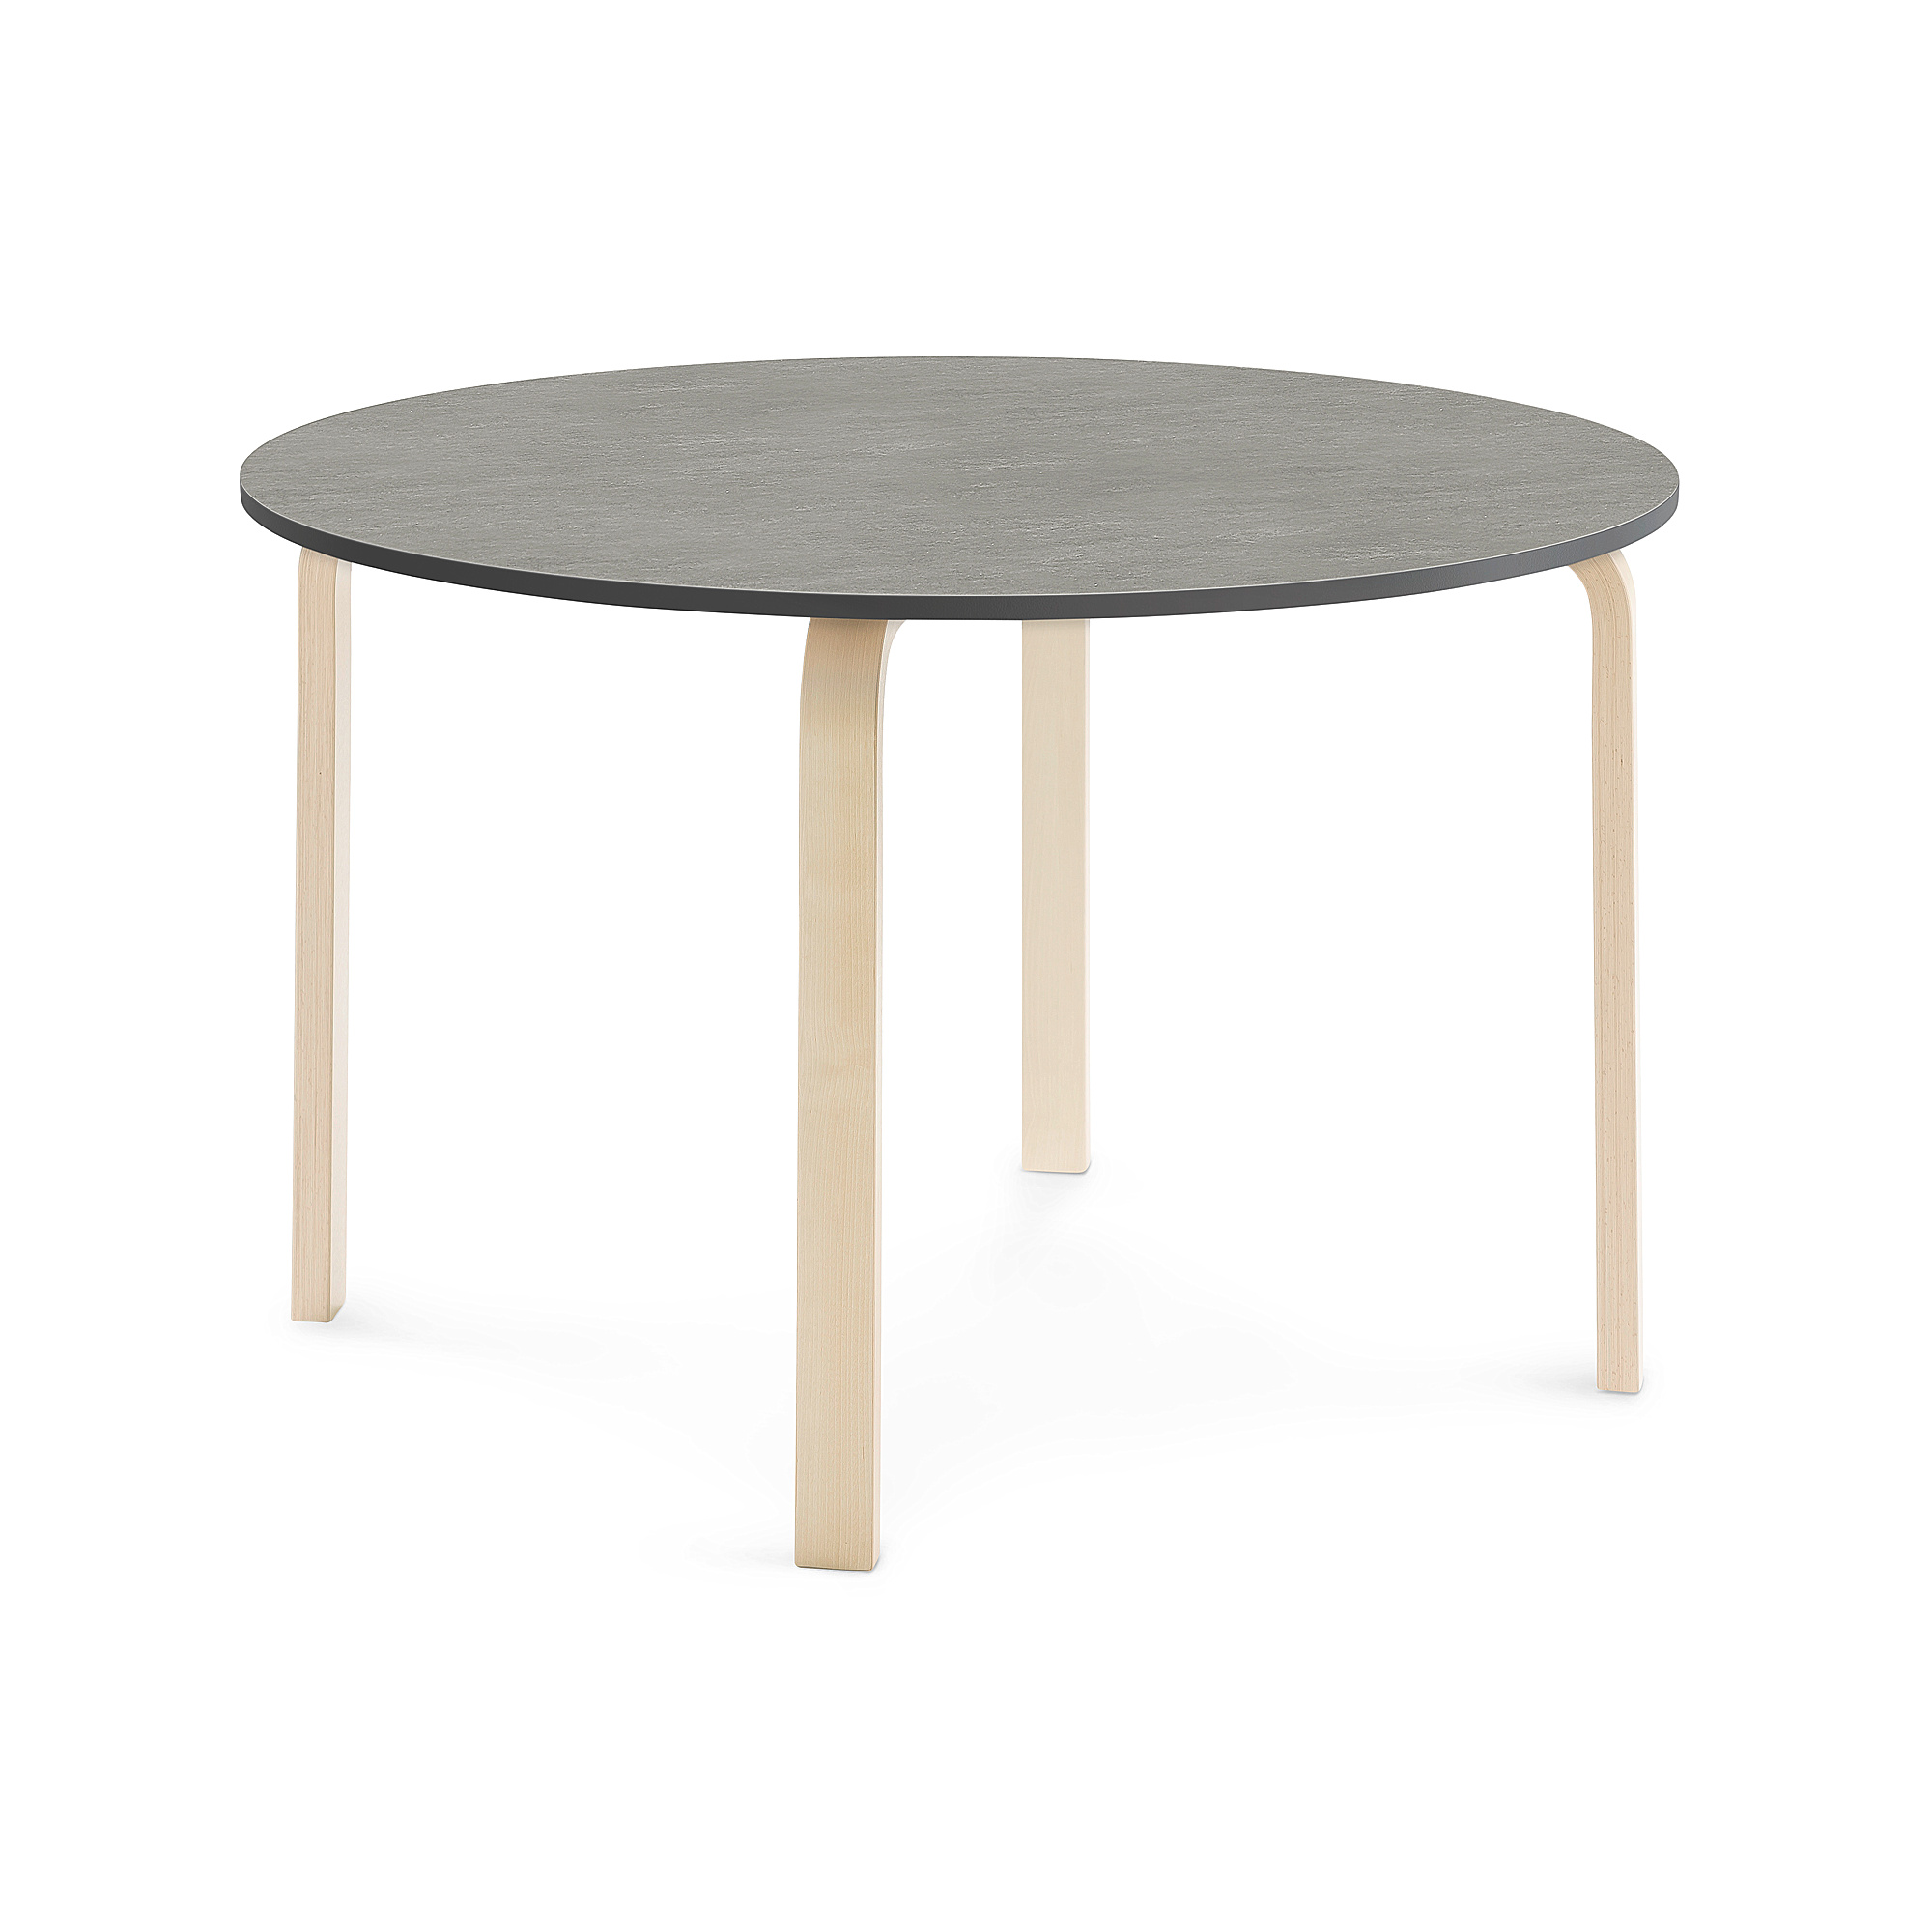 Stůl ELTON, Ø 1200x710 mm, bříza, akustické linoleum, tmavě šedá